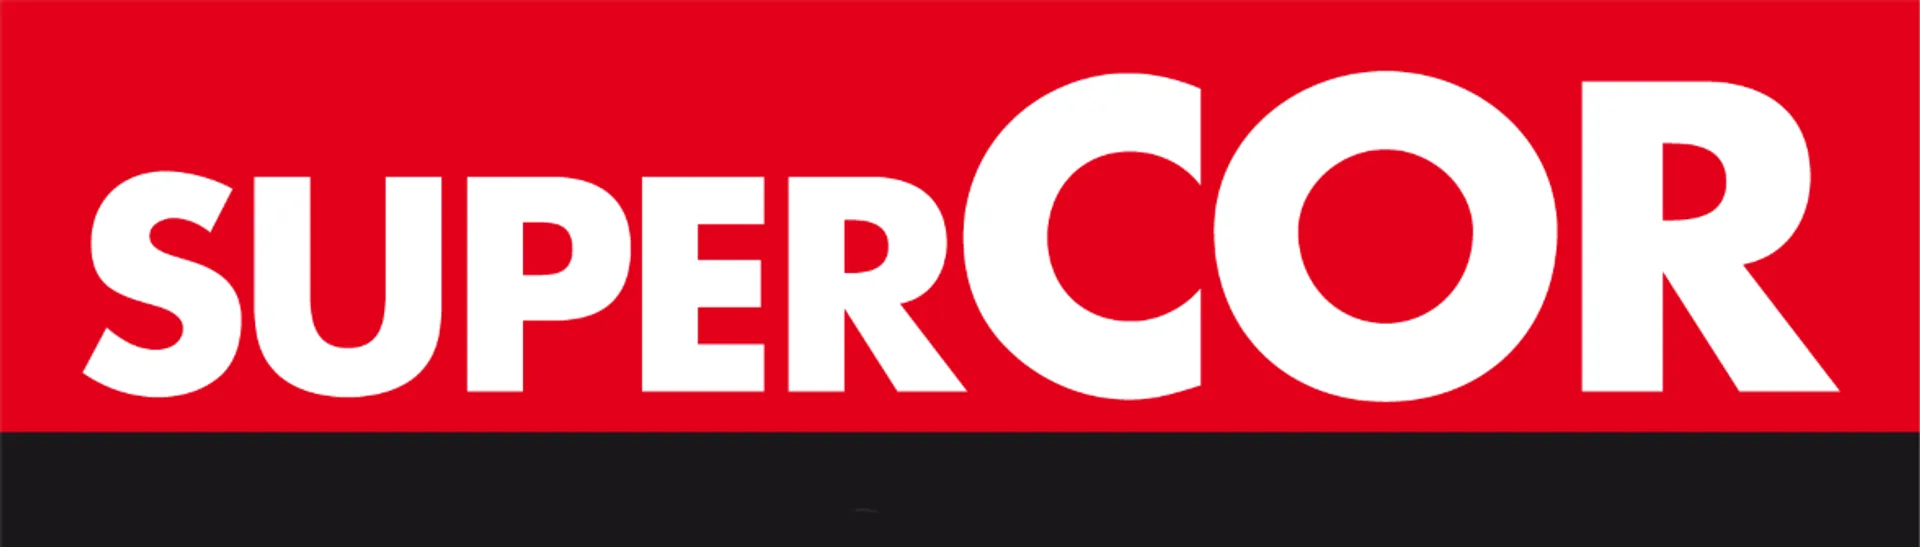 SUPERCOR logo